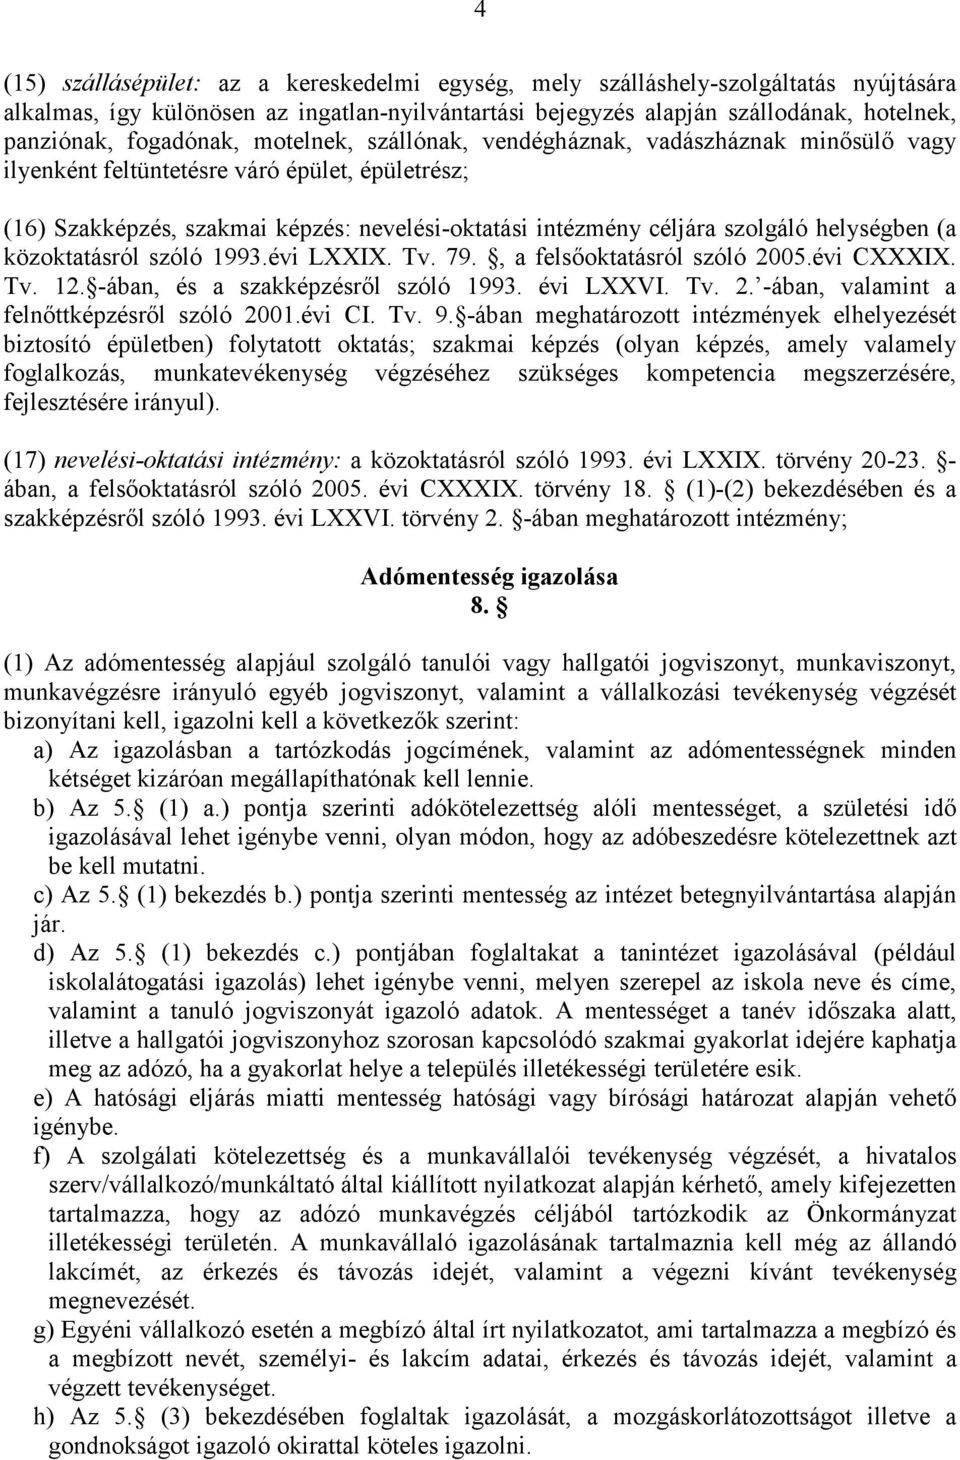 helységben (a közoktatásról szóló 1993.évi LXXIX. Tv. 79., a felsıoktatásról szóló 2005.évi CXXXIX. Tv. 12. -ában, és a szakképzésrıl szóló 1993. évi LXXVI. Tv. 2. -ában, valamint a felnıttképzésrıl szóló 2001.